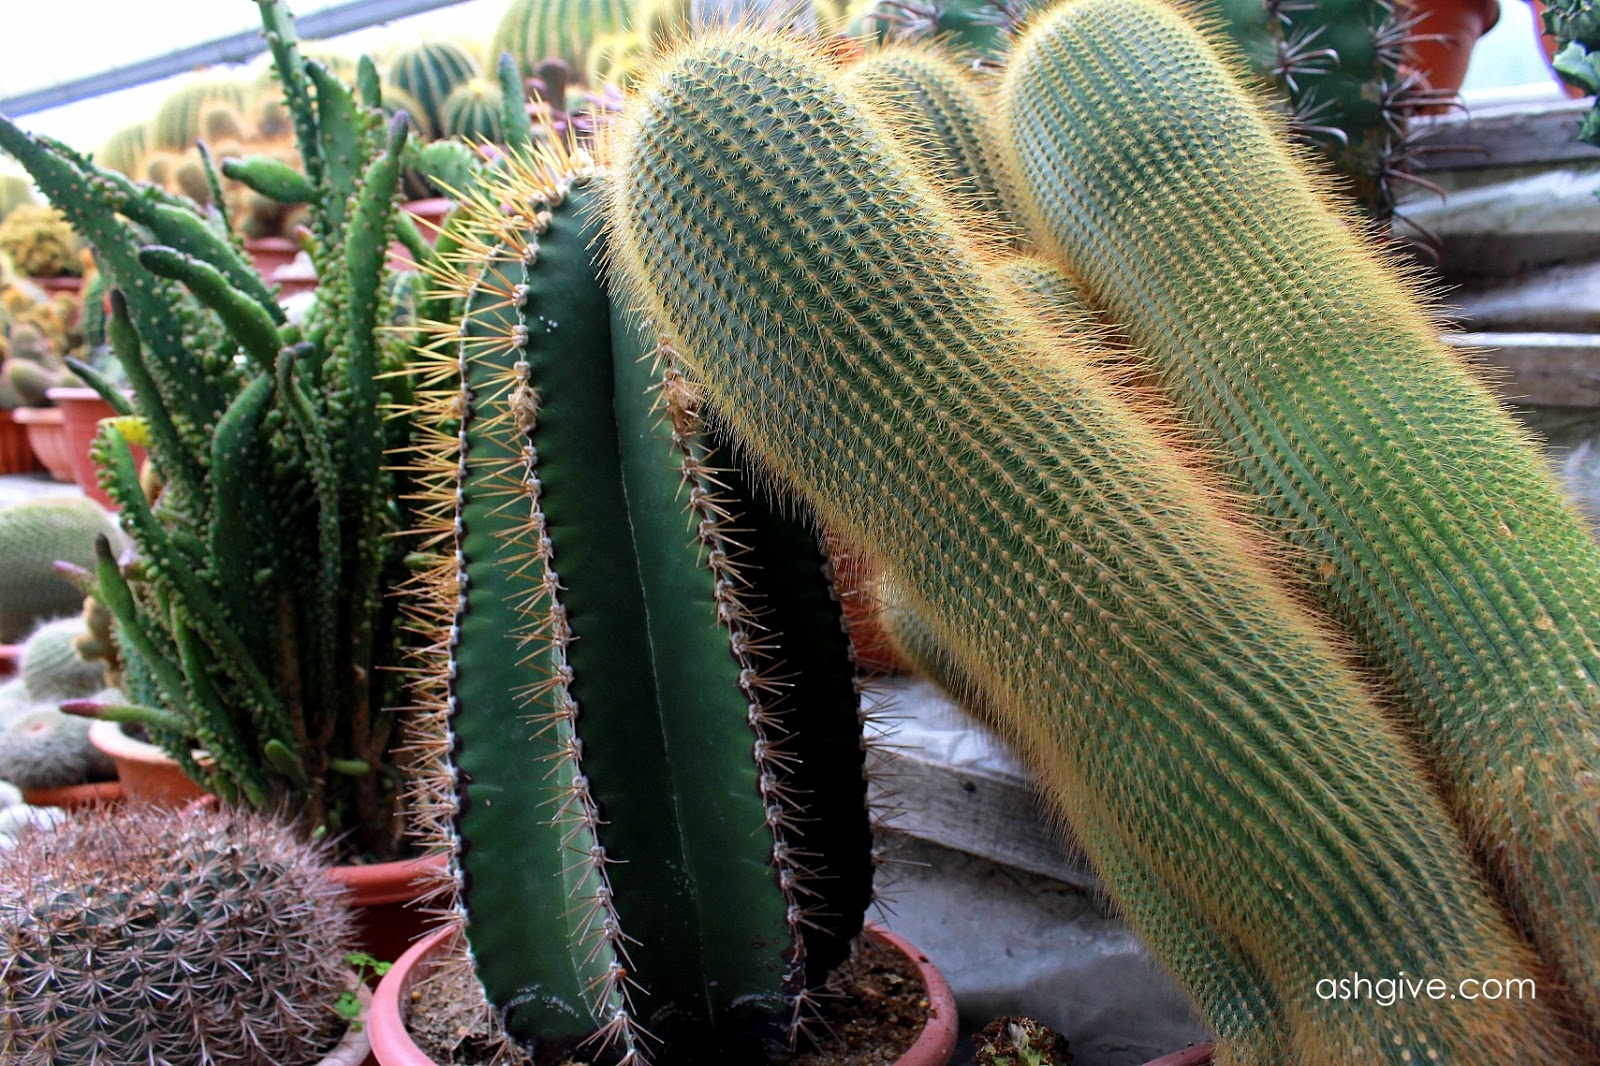 Ashgive.com: Taman Kaktus Cameron Highlands: Jalan jalan di Cactus